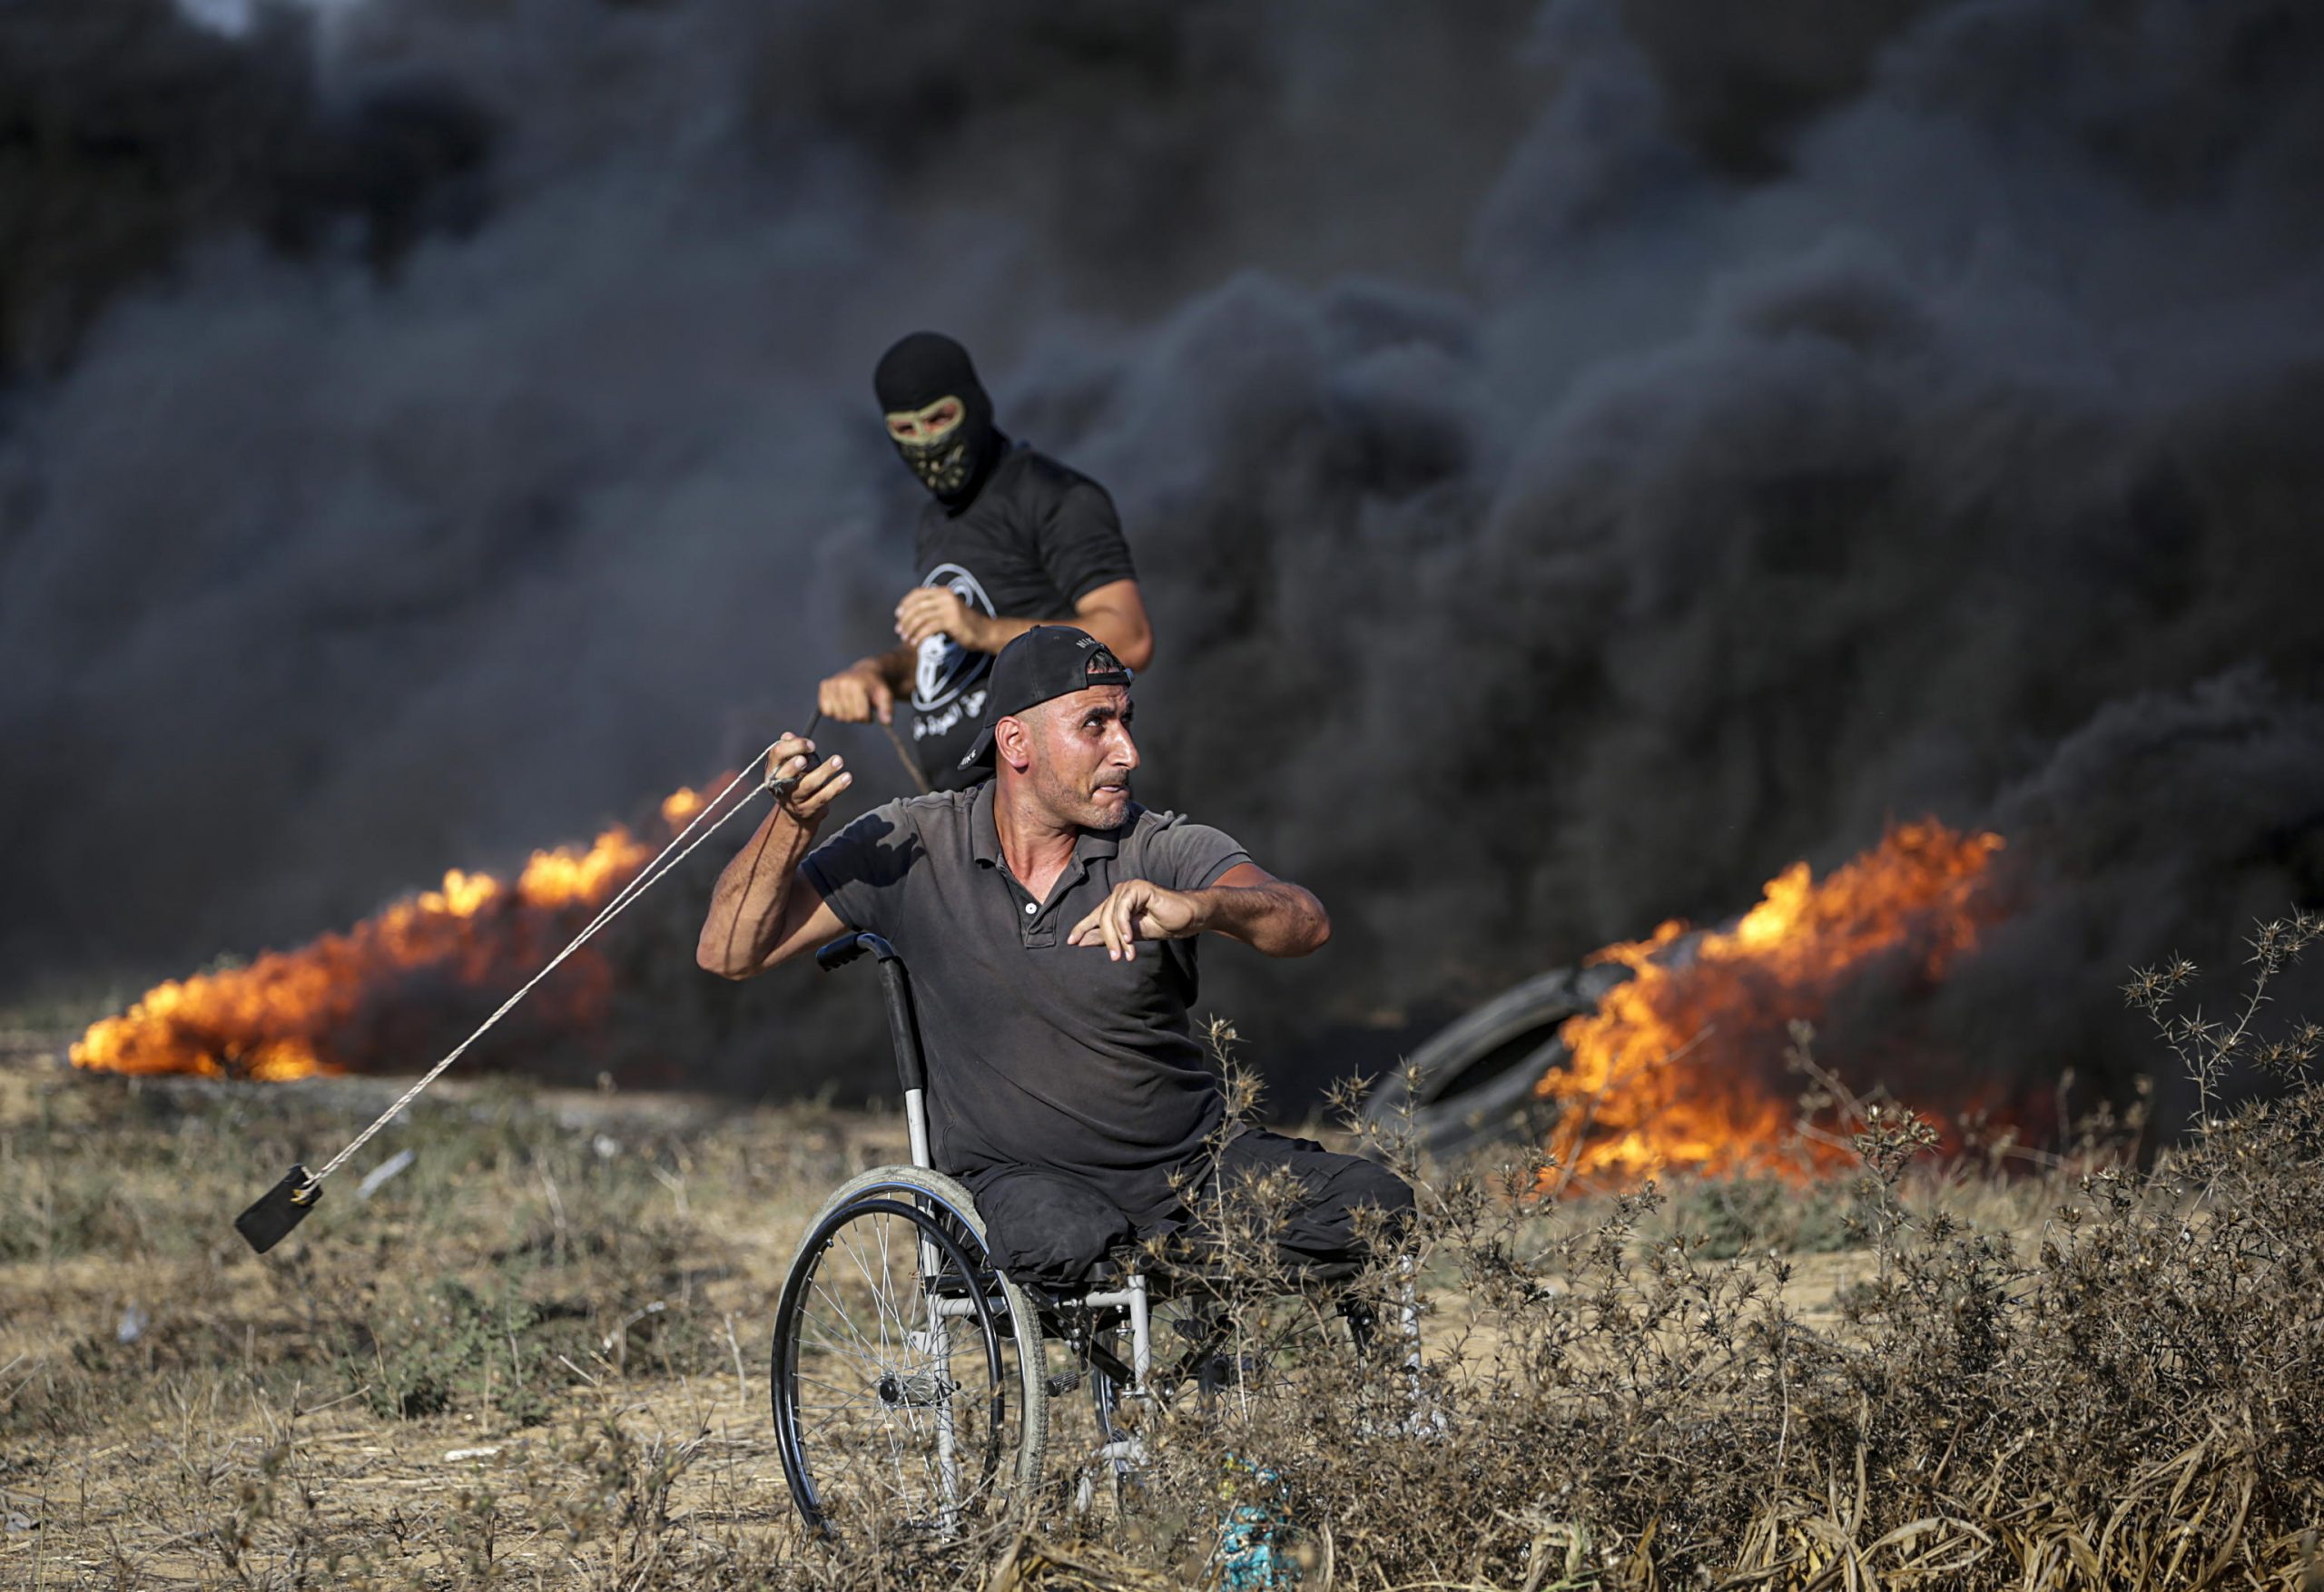 L'alba di Hamas è per Israele un incubo da svegli. E il mondo cambia ancora, dopo Kiev